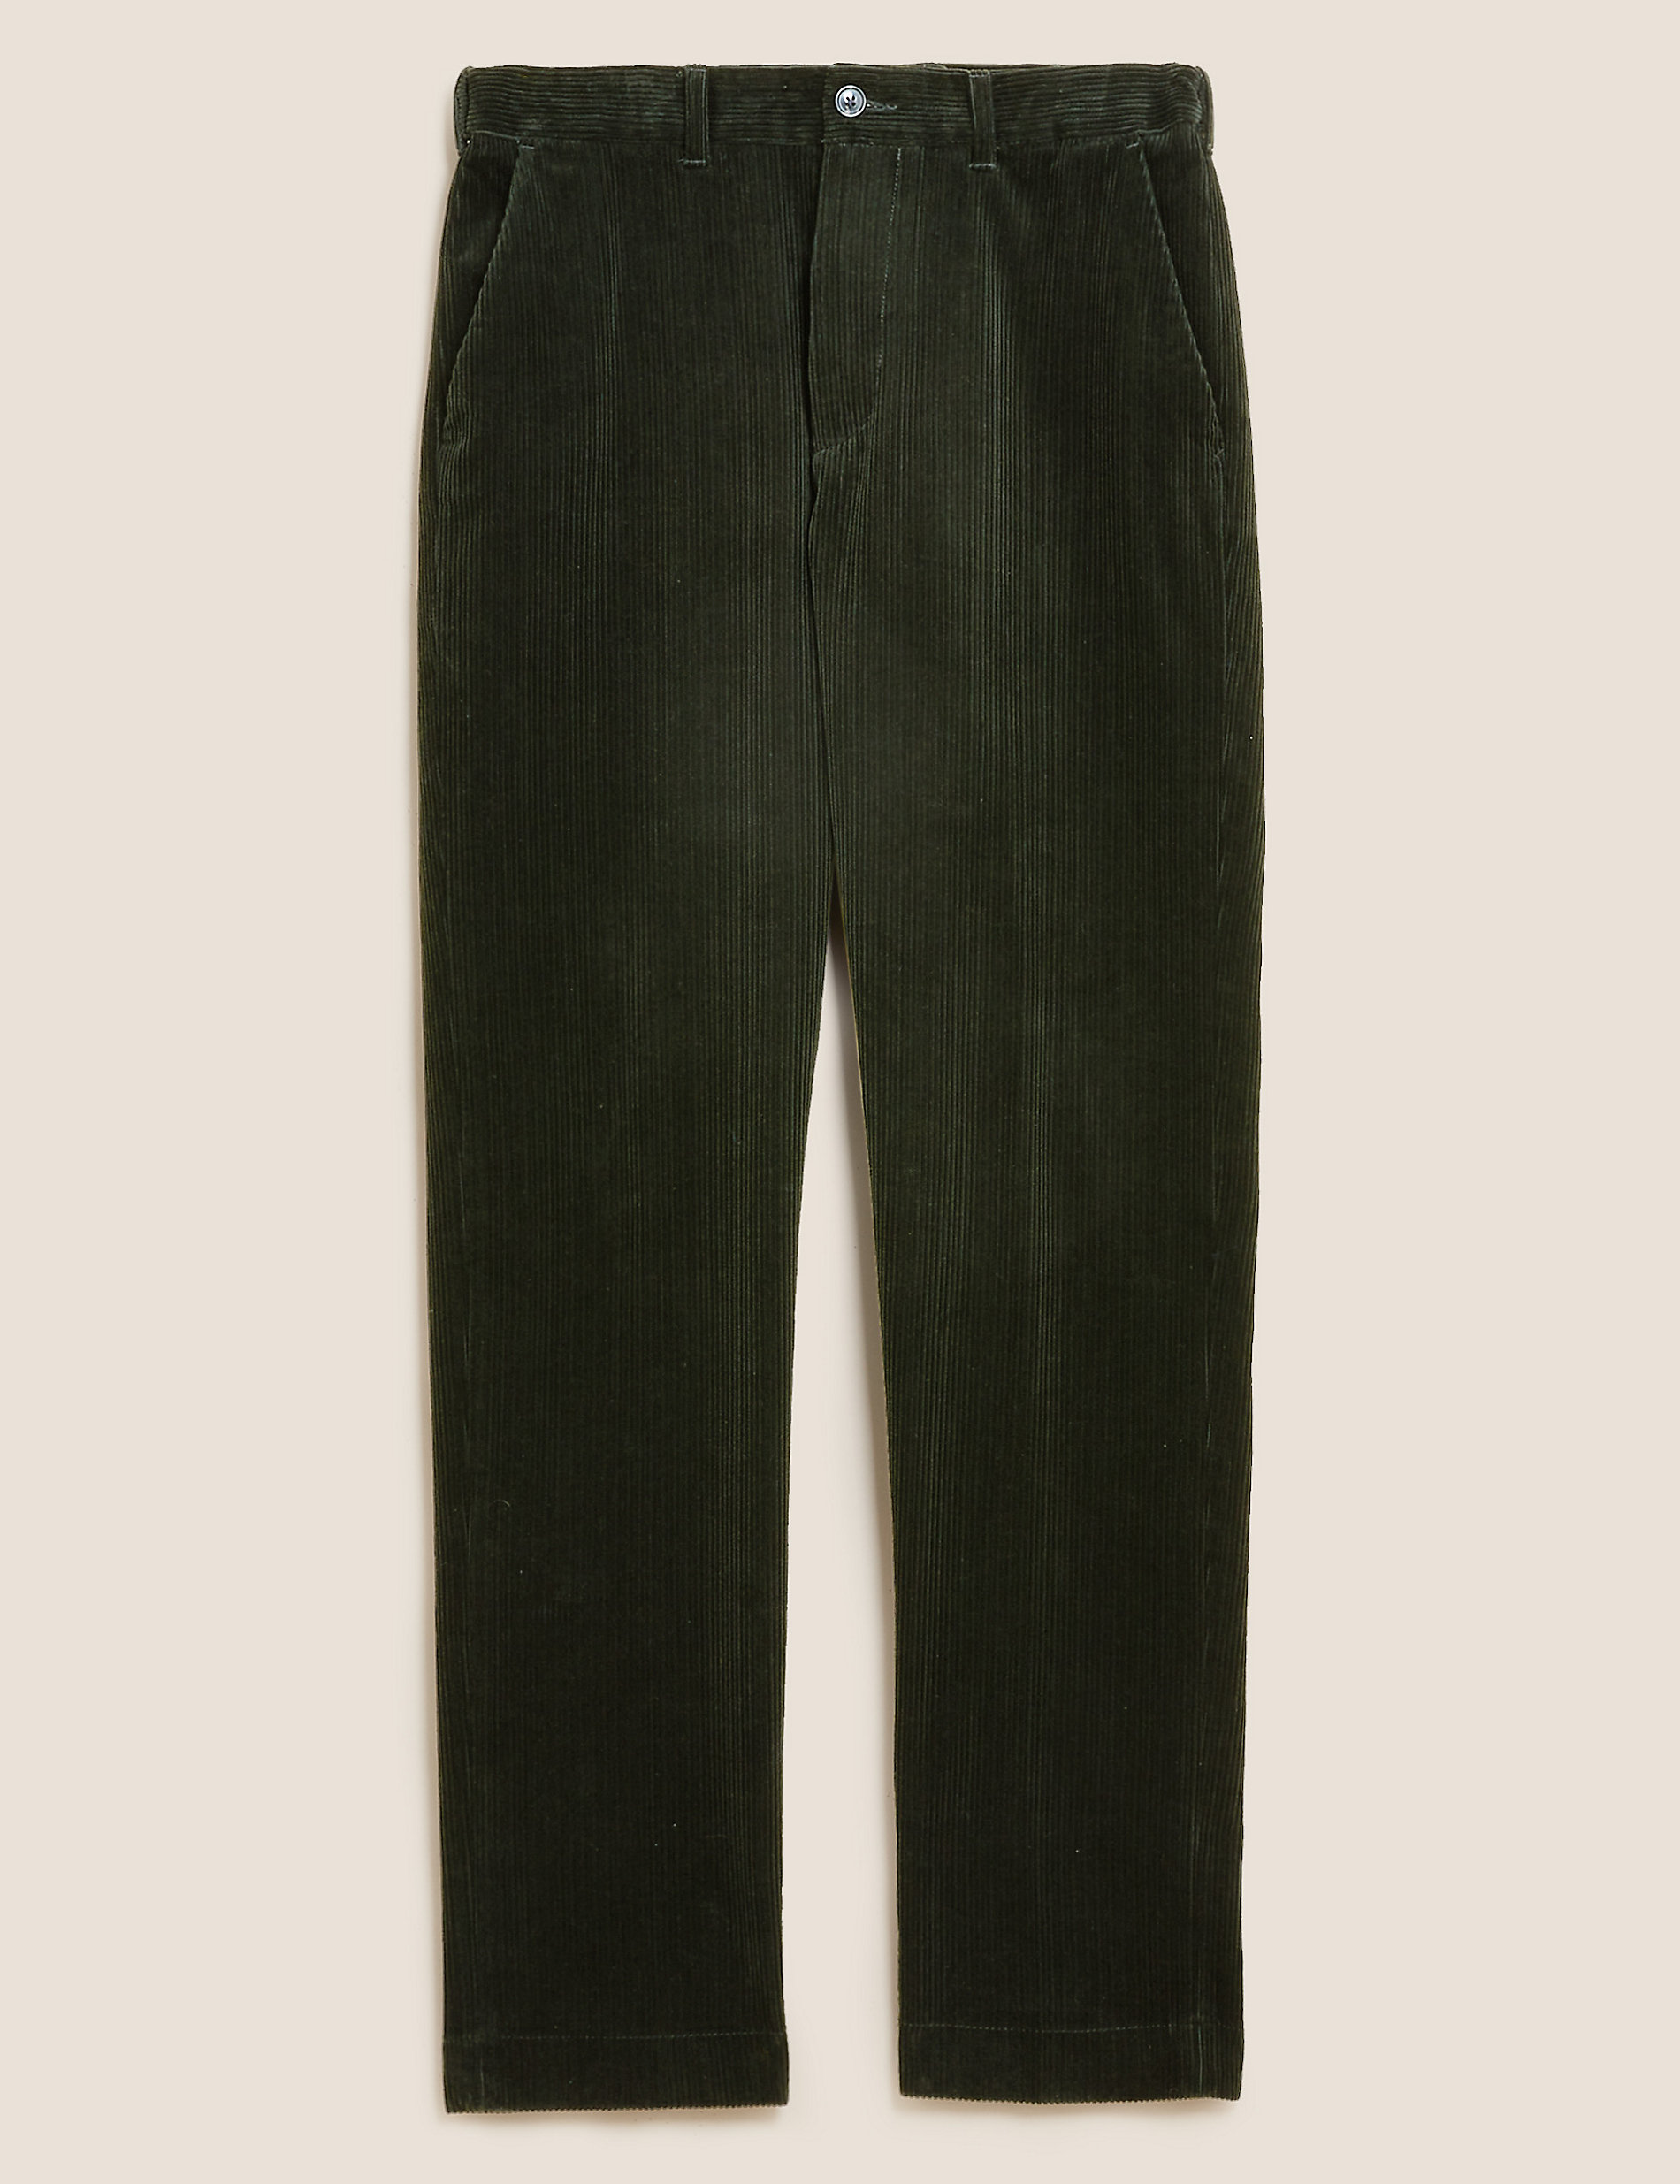 Pantalon coupe standard en velours côtelé extensible de qualité supérieure